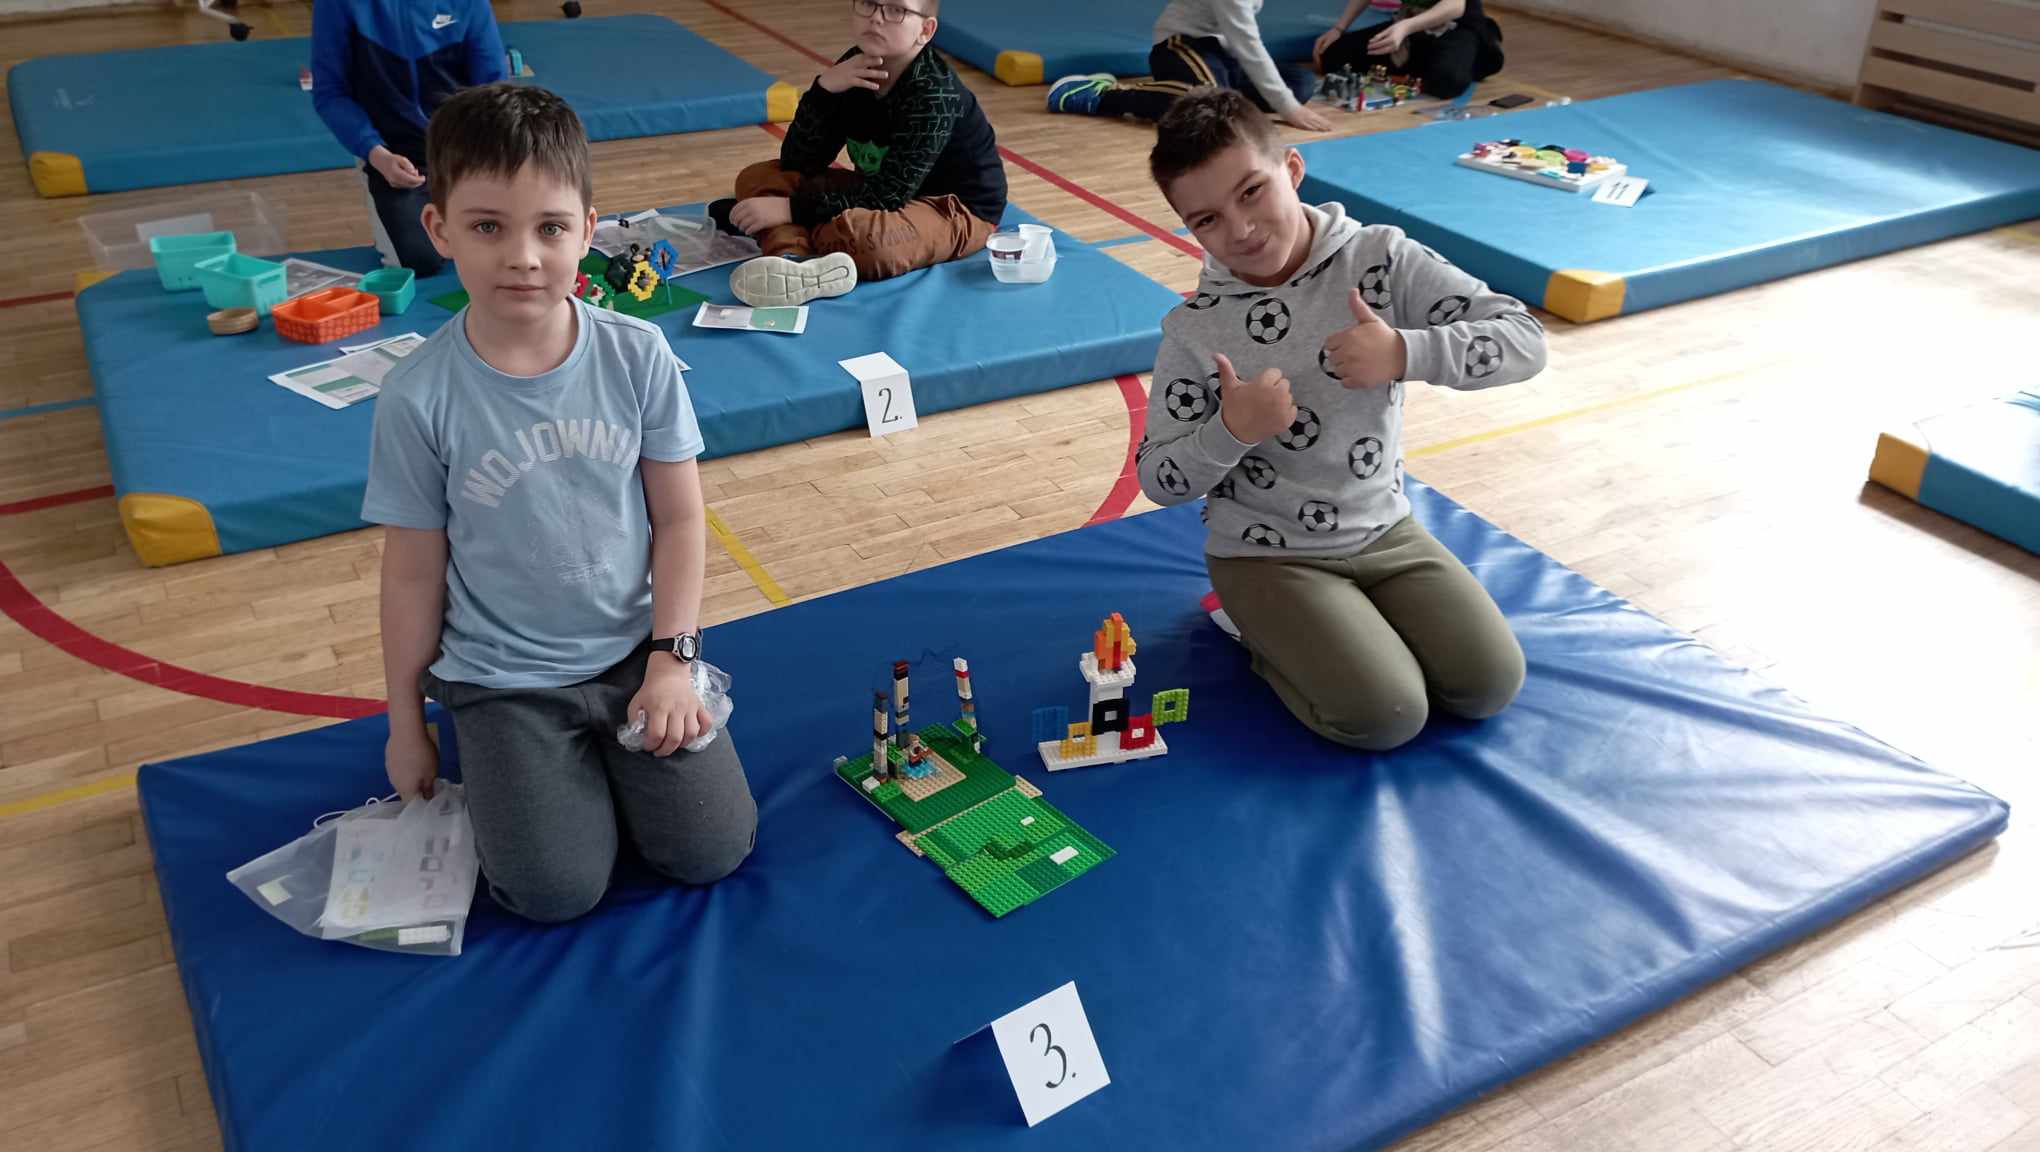 W sali gimnastycznej na niebieskim materacu siedzi dwoje uczniów z klasy II. Przed nimi stoi ich budowla z klocków LEGO i etykietka z cyfrą 3. W tle 5 innych materacy z dziećmi i budowlami z klocków.